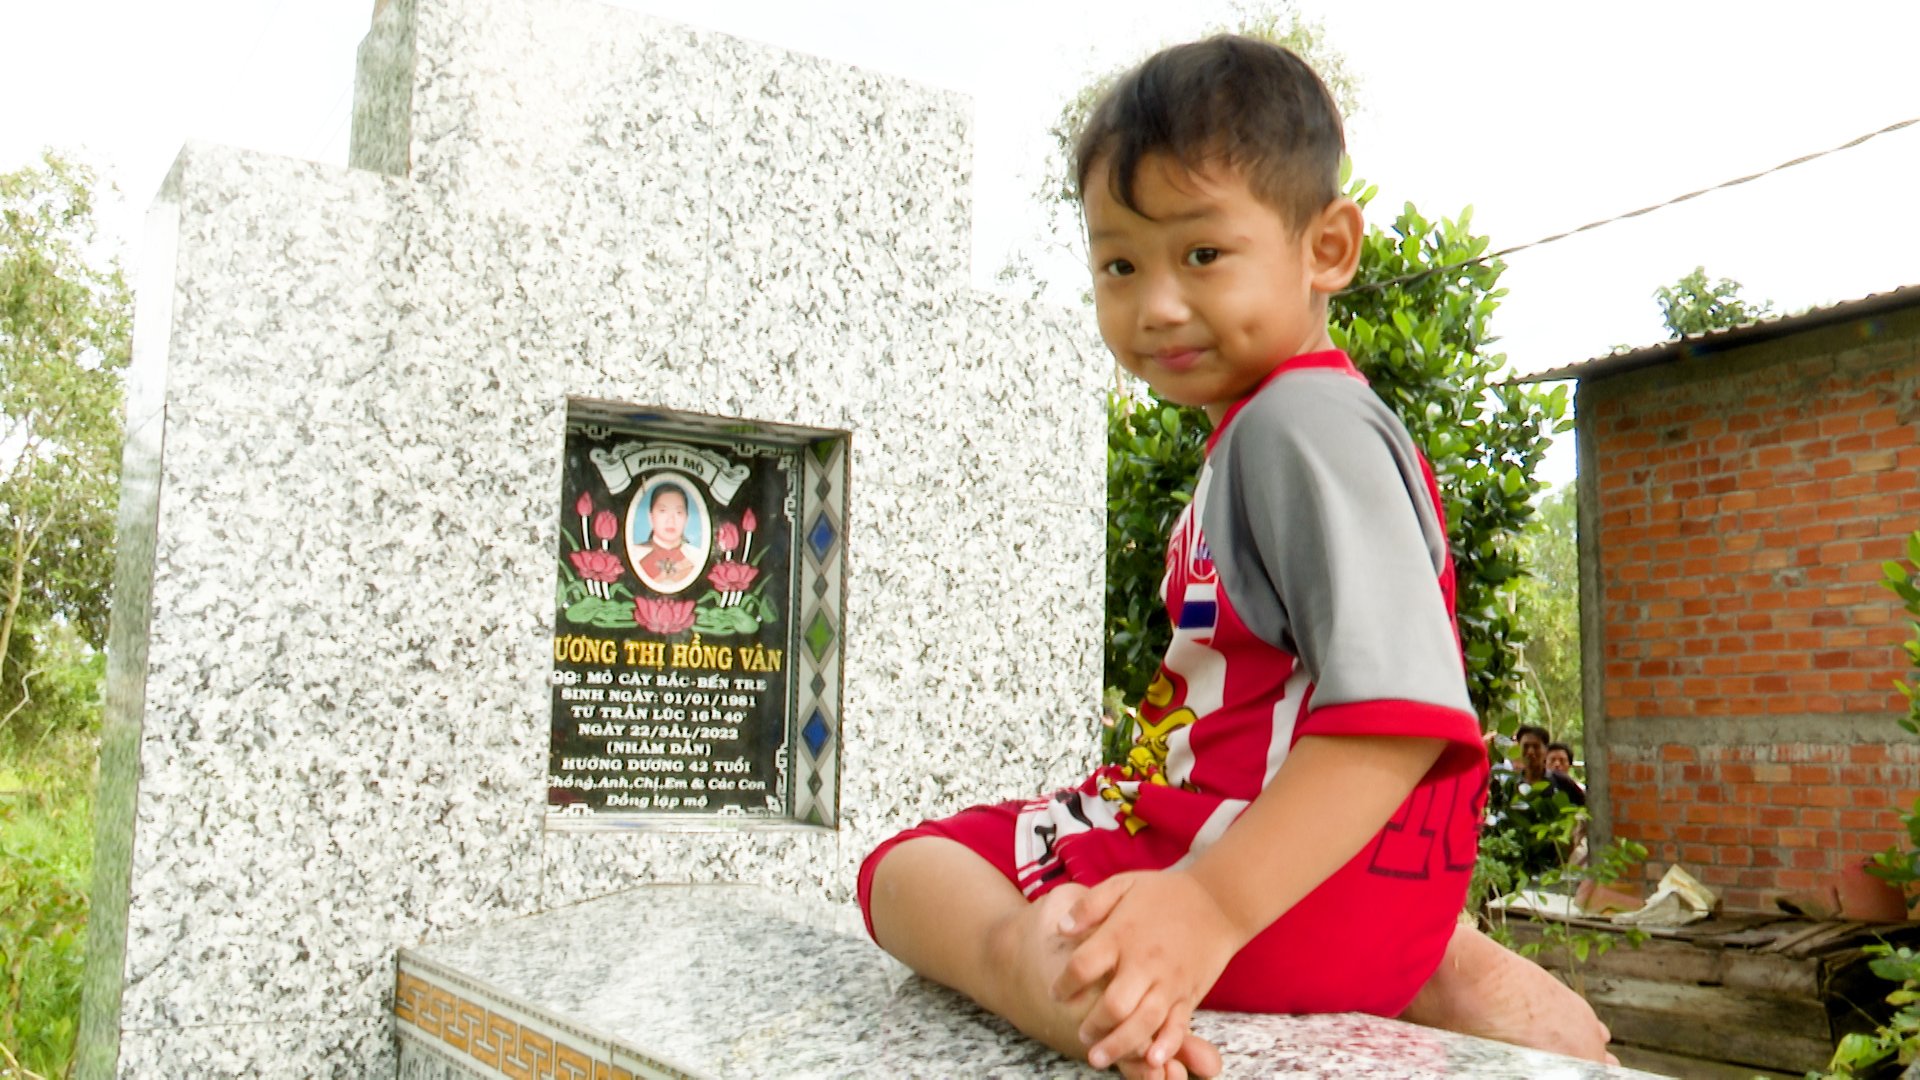 Đặng Hữu Phước đang nói chuyện với mẹ dưới mộ. Ảnh: Nông nghiệp Việt Nam.